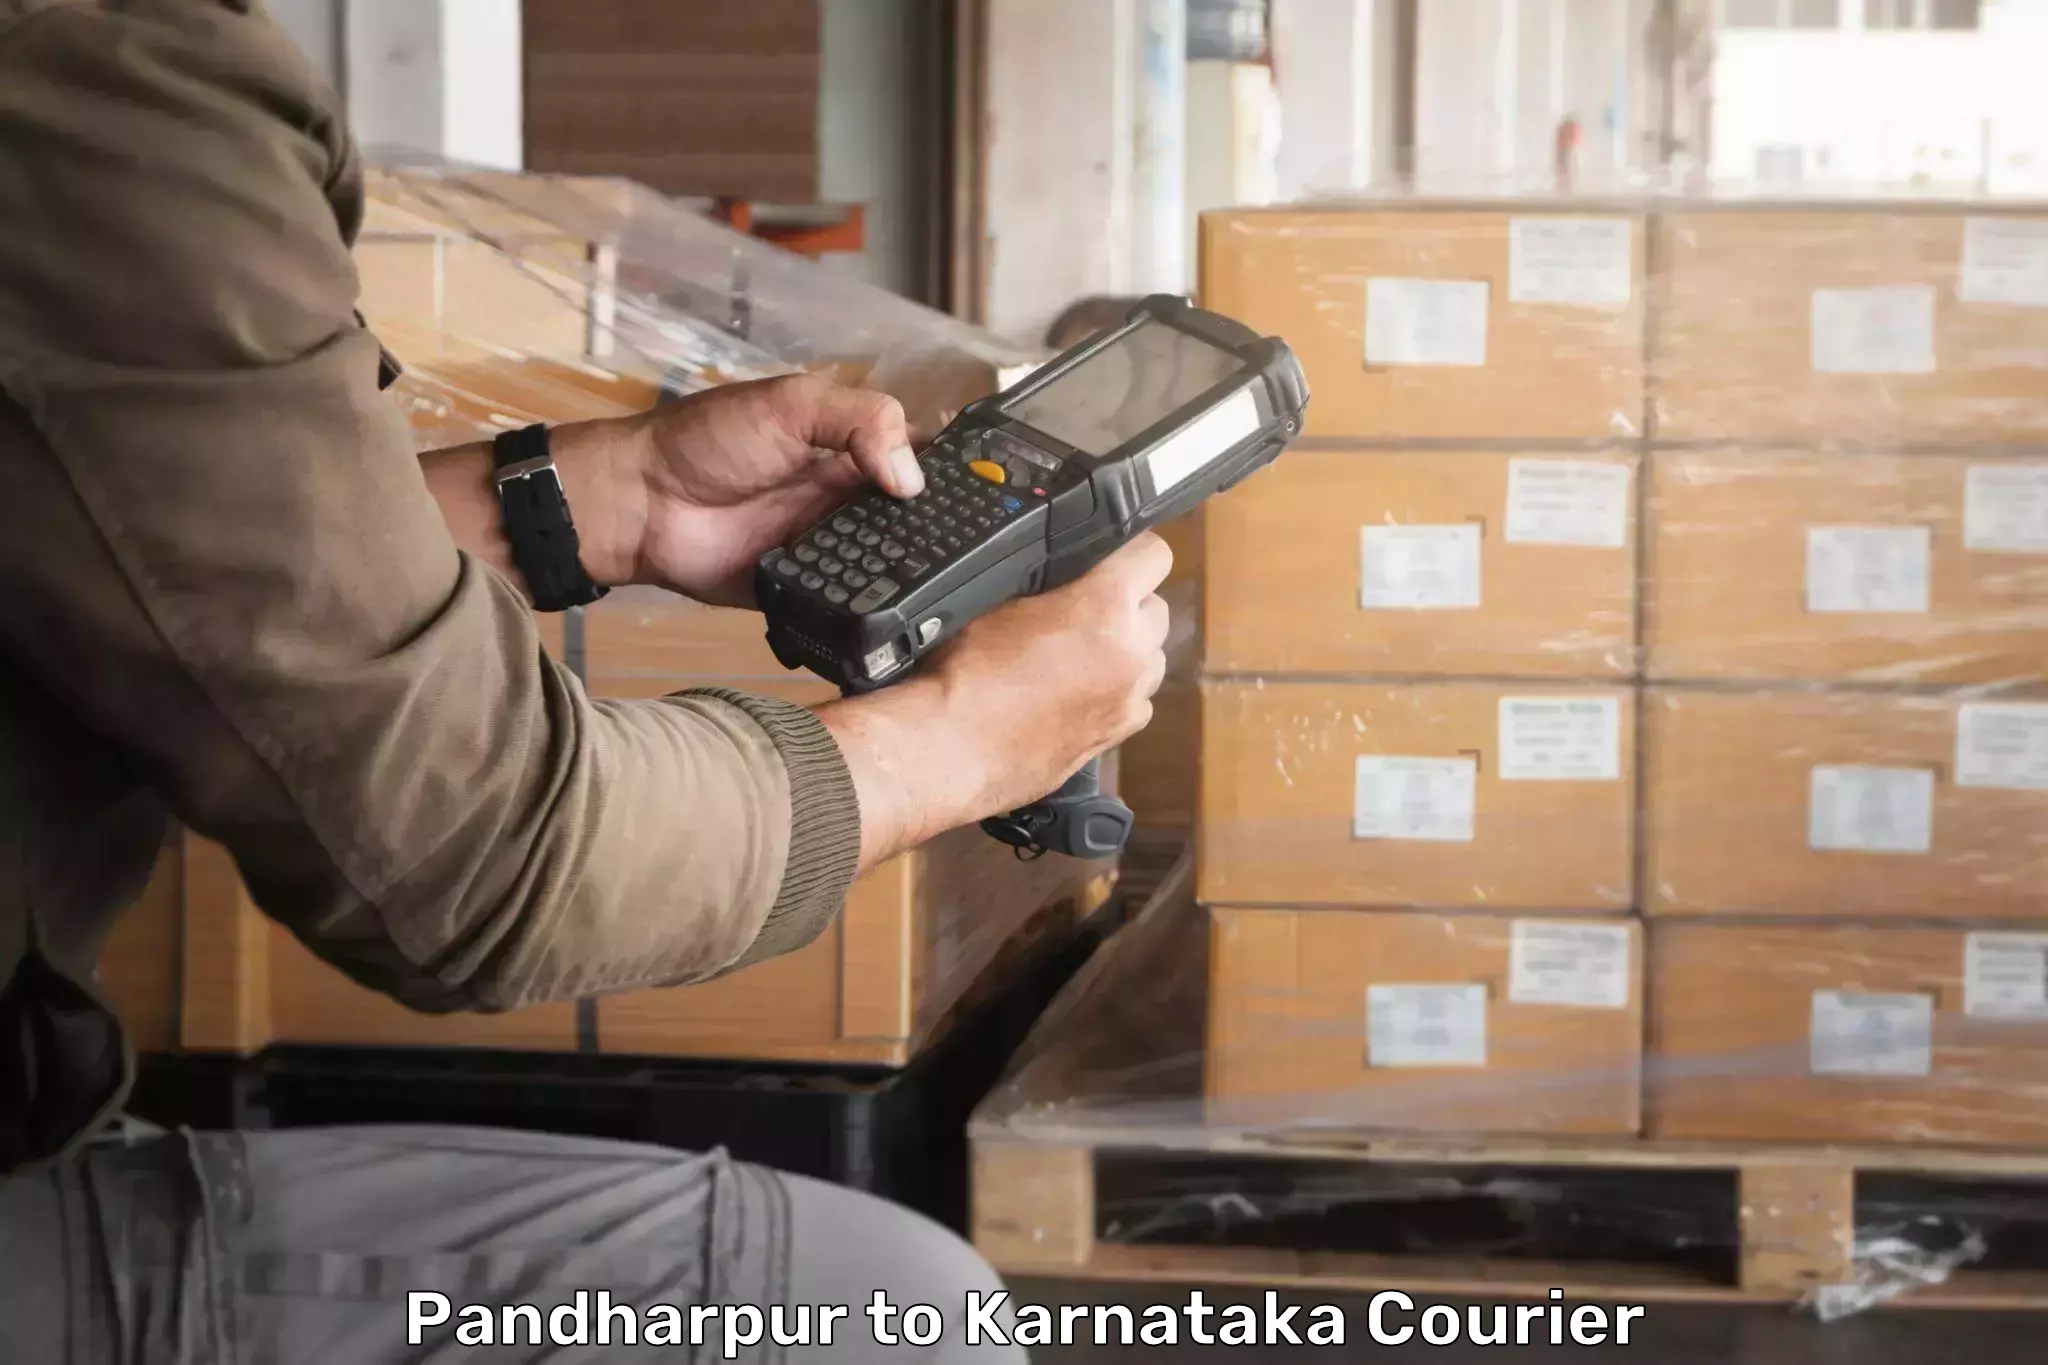 Sustainable delivery practices Pandharpur to Chikkanayakanahalli